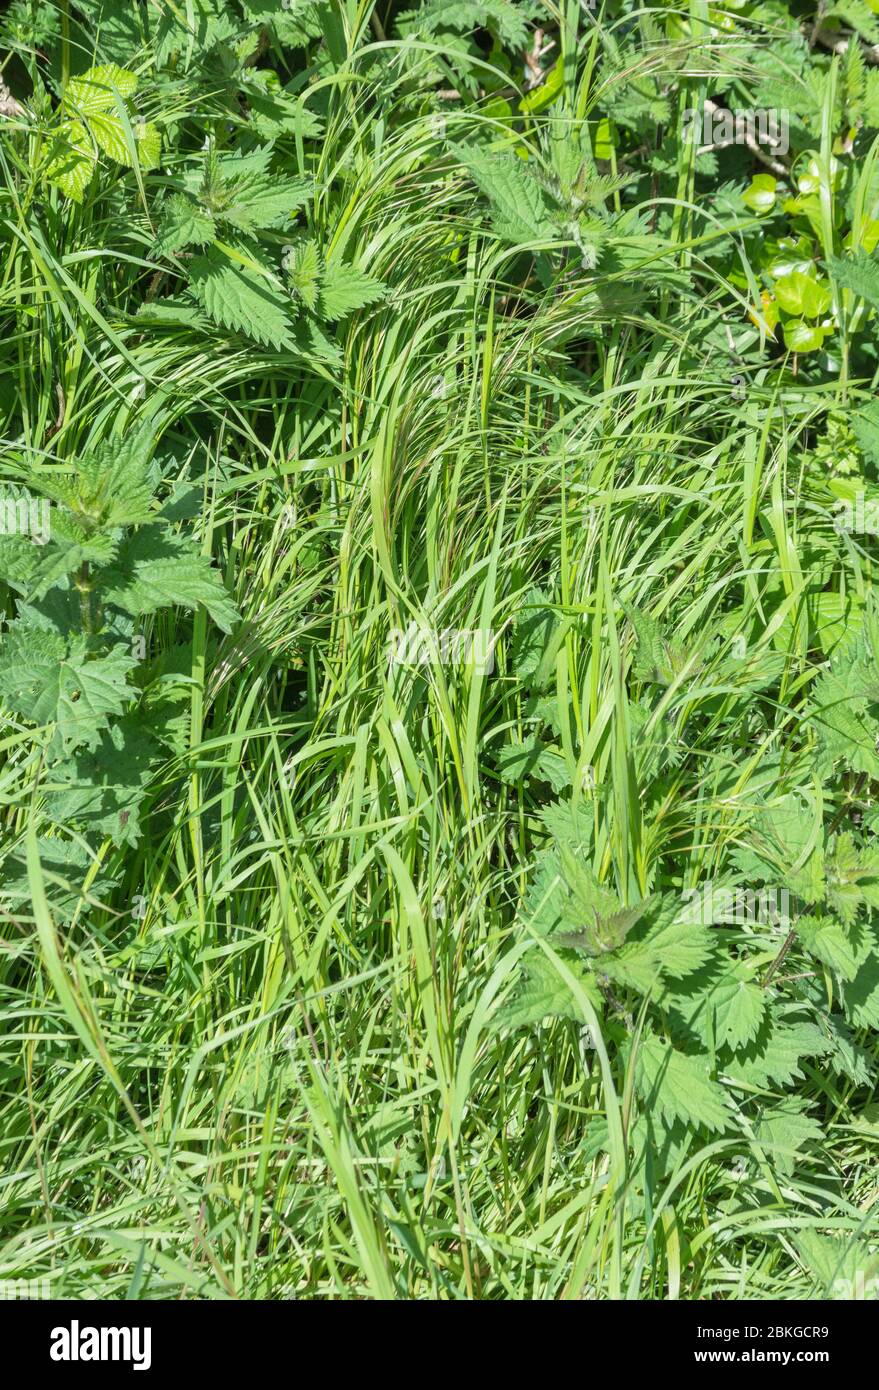 Verdi erbe e erbacce alte e lussureggianti lungo una strada di campagna sonnolenta. Erba verde lunga, grana lunga. Metafora calciata nell'erba lunga. Foto Stock